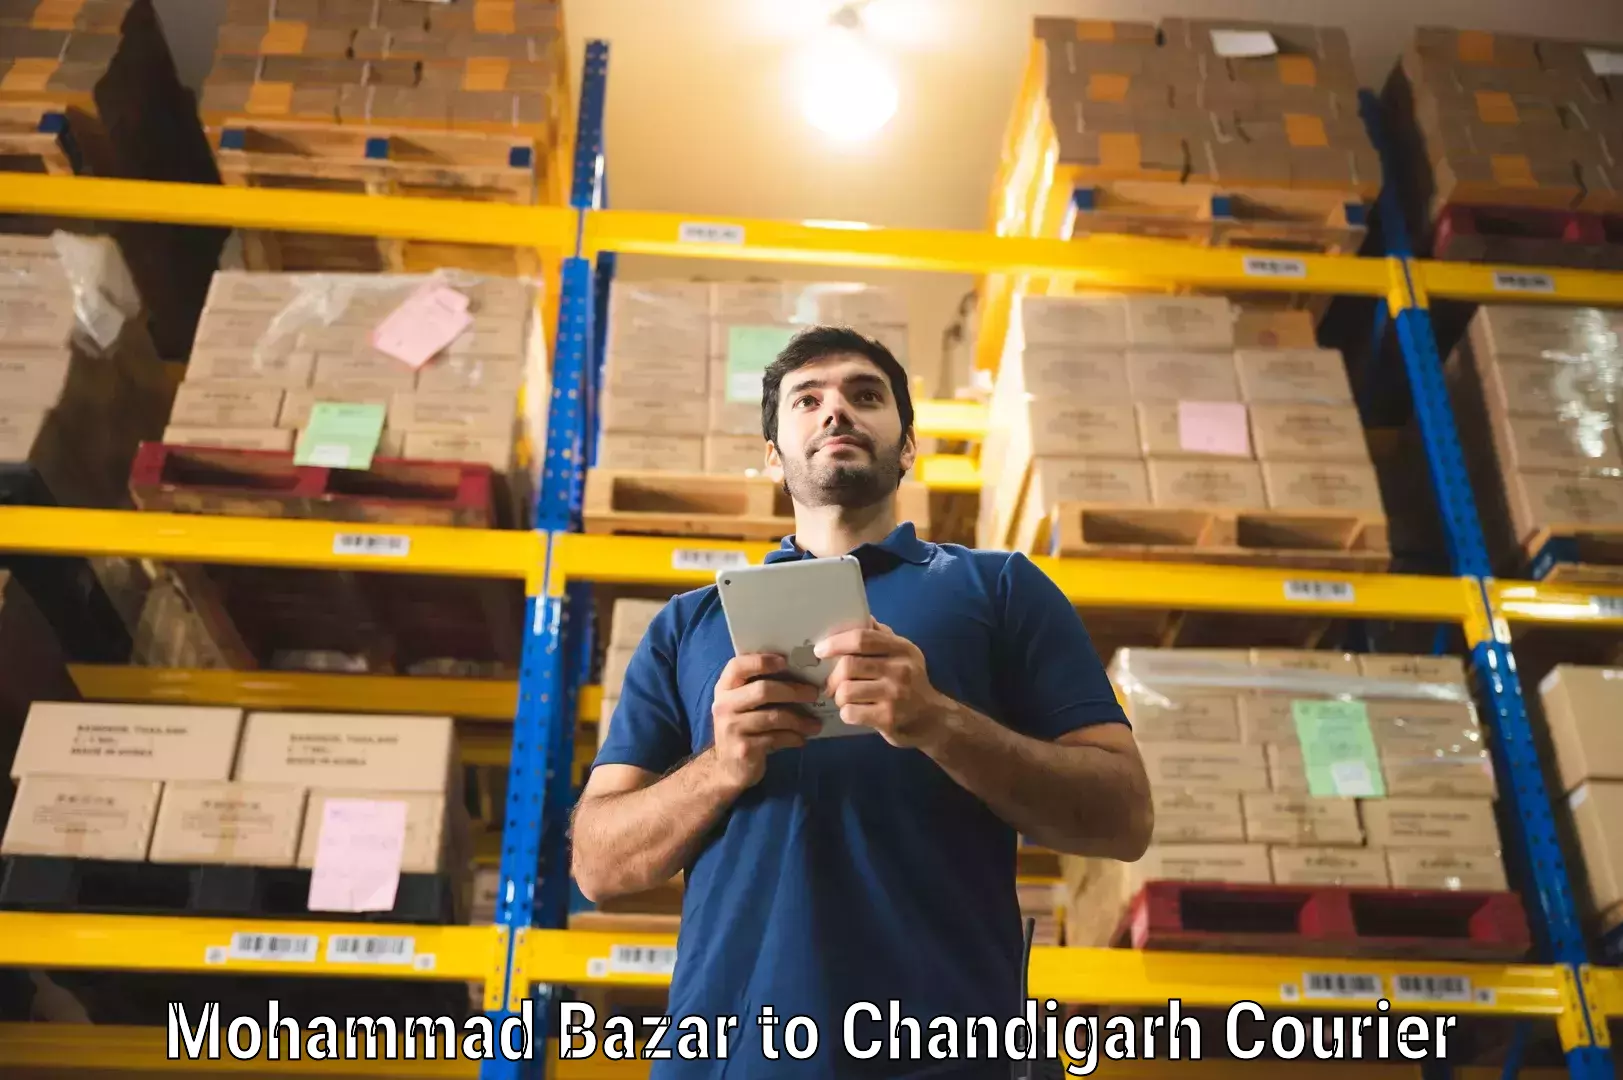 Urban courier service Mohammad Bazar to Chandigarh